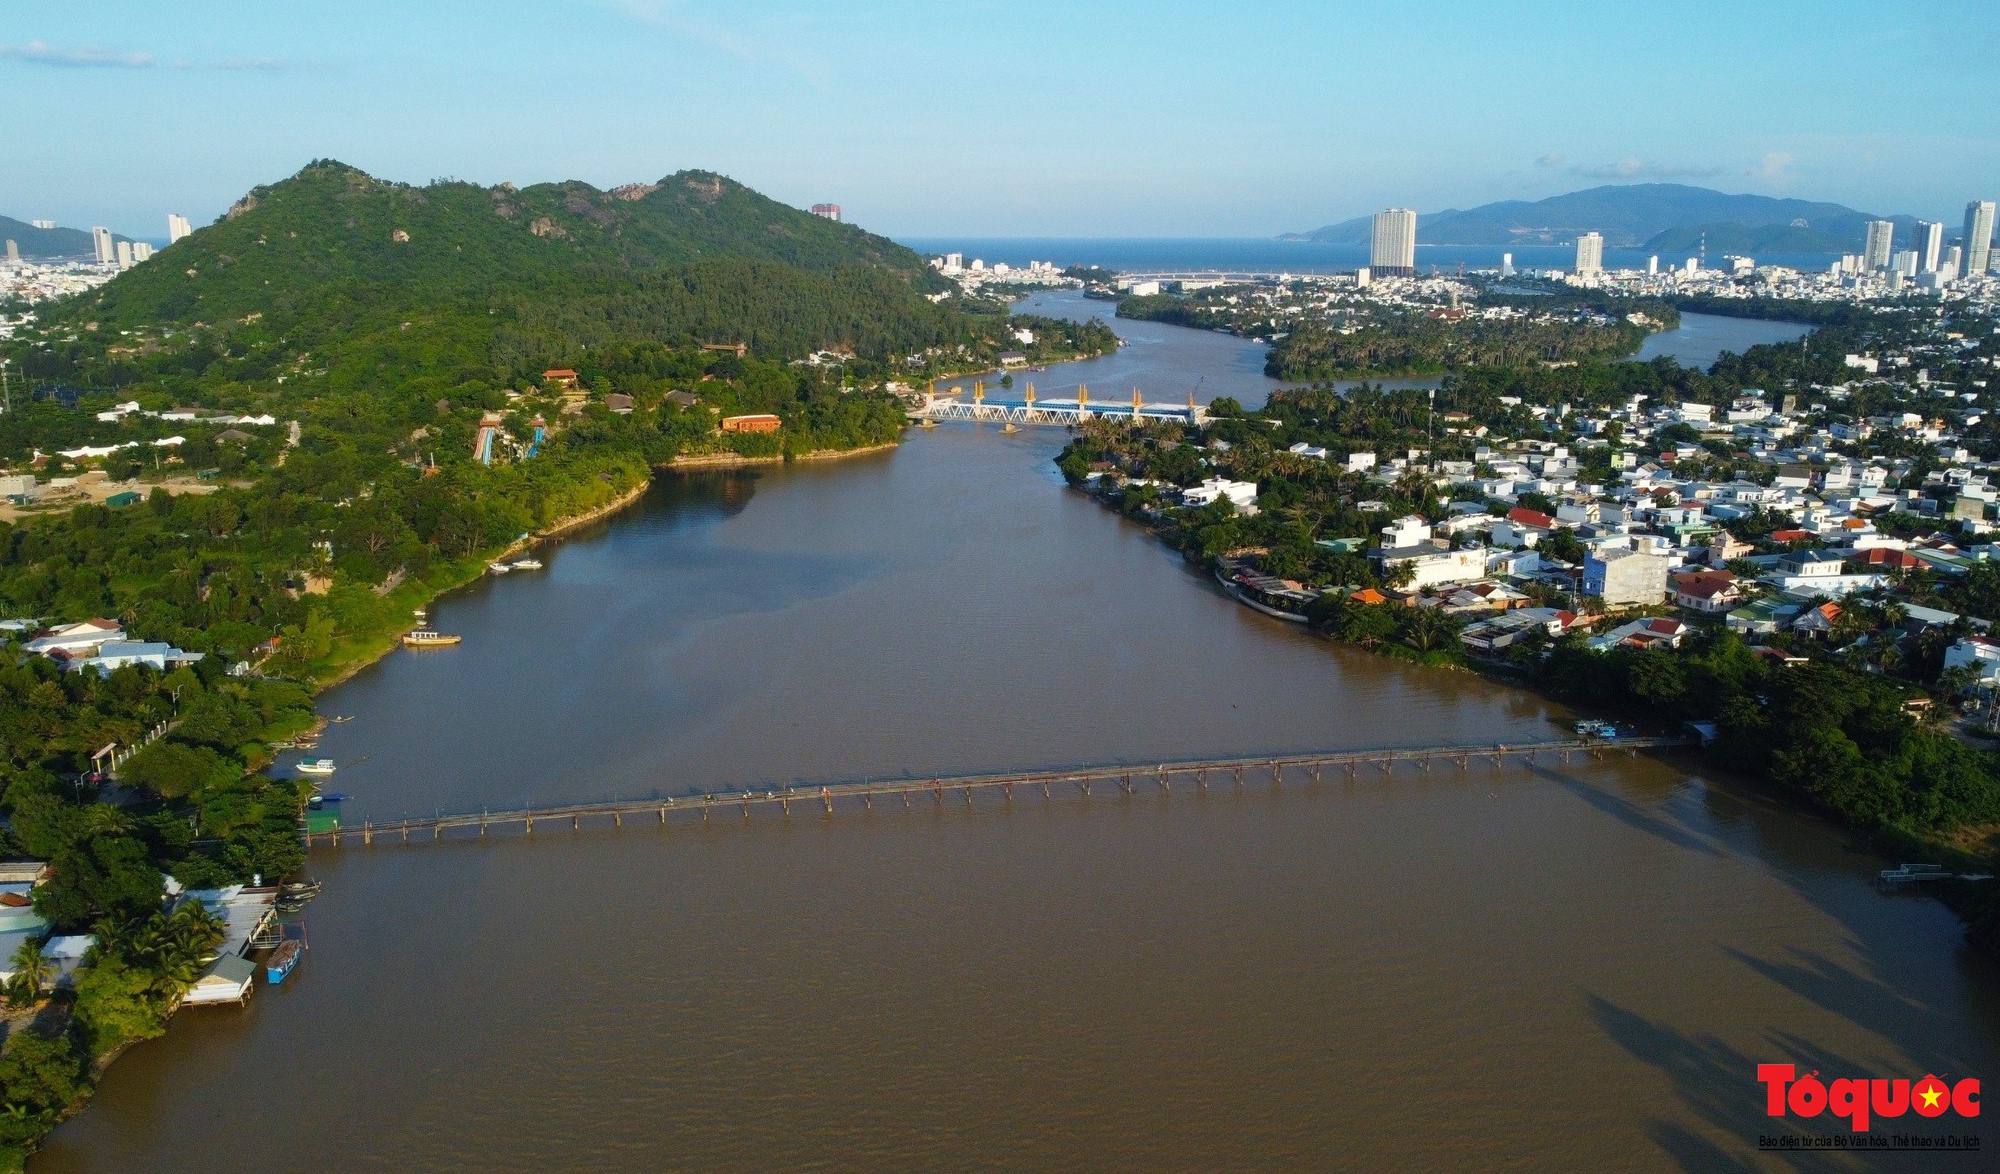 Cận cảnh cầu gỗ nối đôi bờ sông Cái ở Nha Trang vừa được chi gần 500 tỷ đồng để thay thế - Ảnh 1.